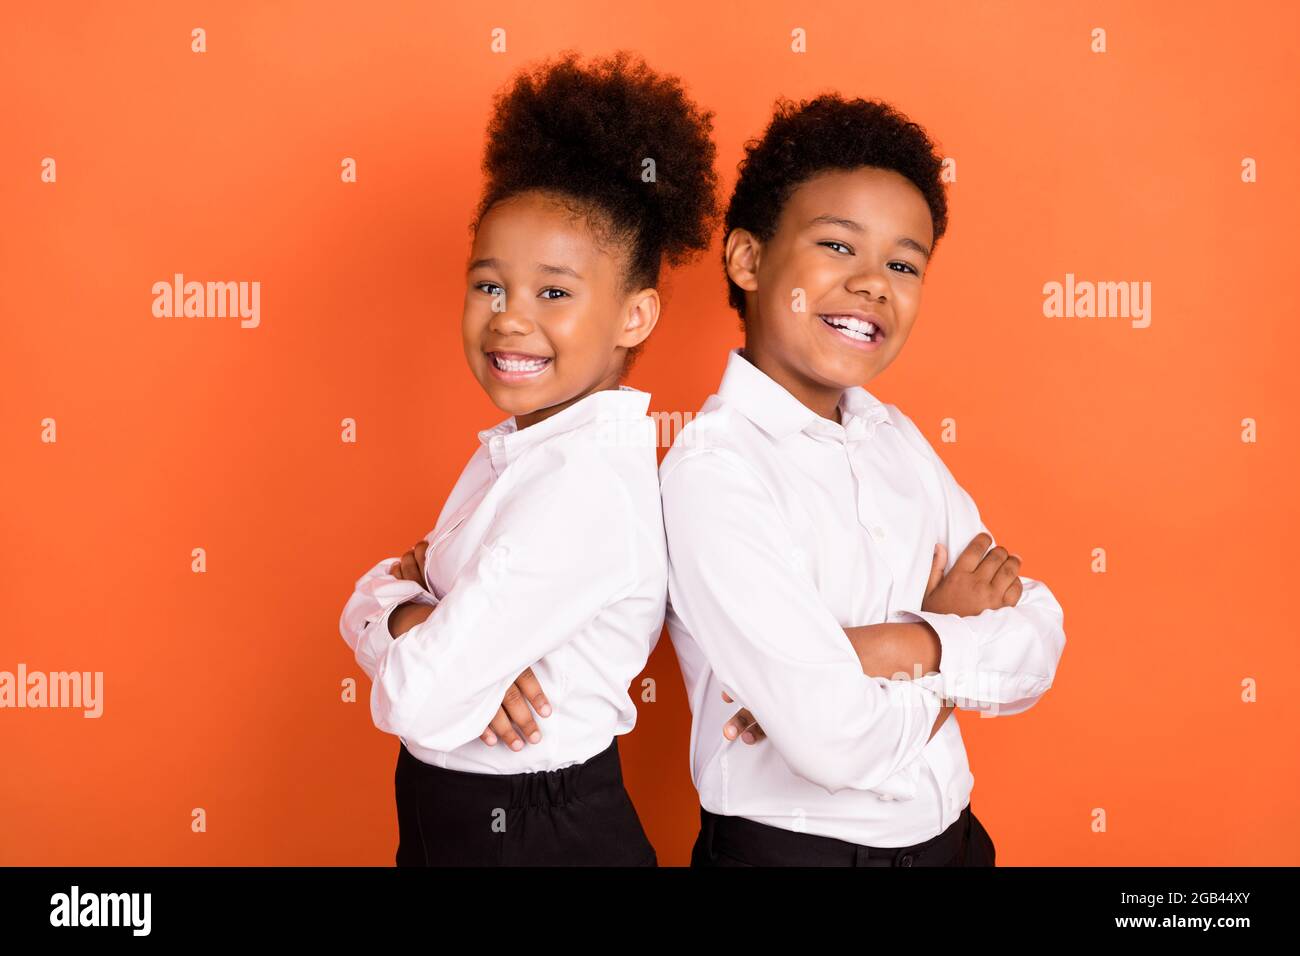 Profil Seitenfoto von zwei jungen schwarzen Kindern glücklich positive Lächeln Pupille uniform gekreuzte Hände isoliert über orange Farbe Hintergrund Stockfoto